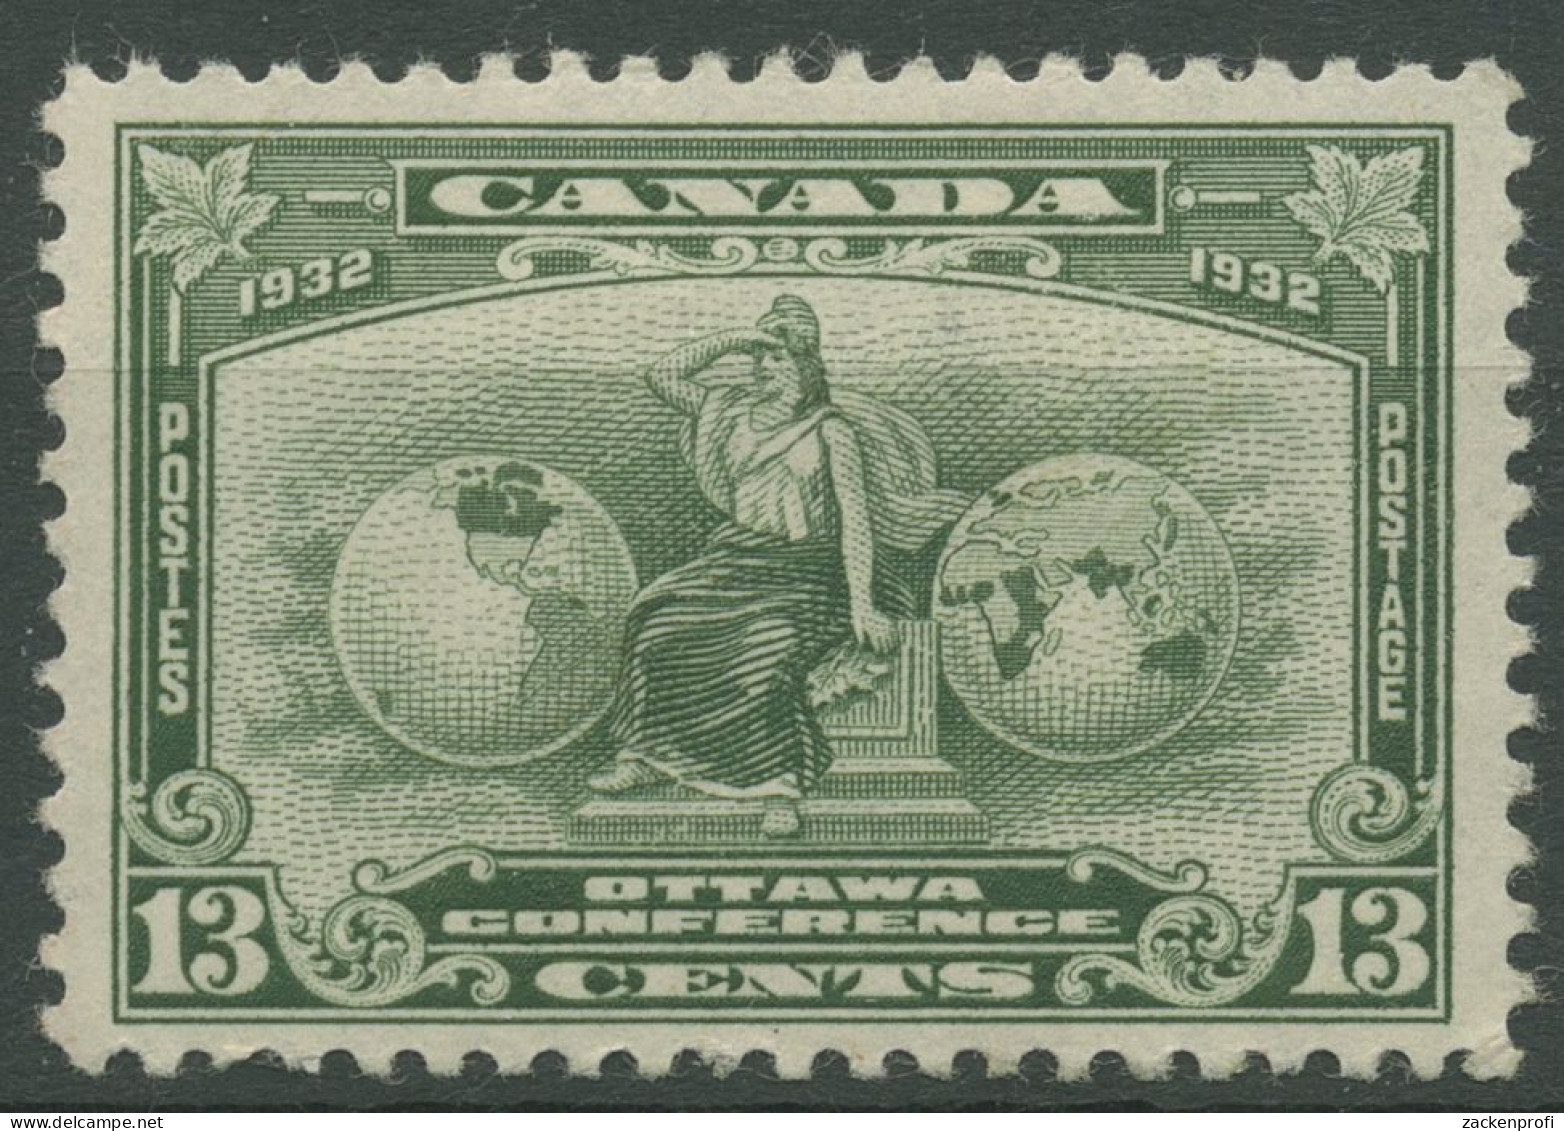 Kanada 1932 Wirtschaftskonferenz In Ottawa Allegorie 161 Mit Falz, Haftstellen - Ongebruikt